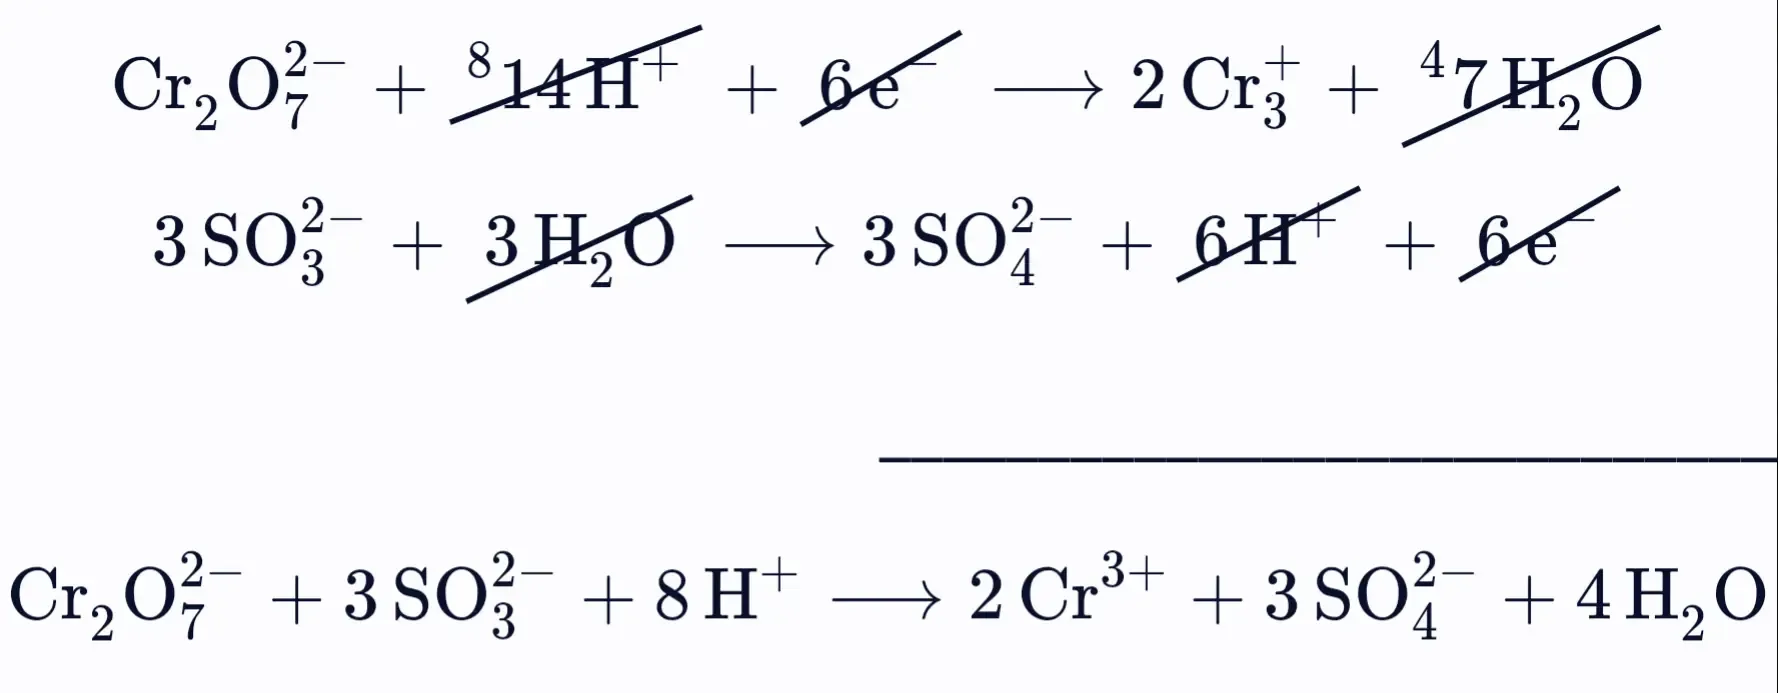 موازنة المعادلة الأيونية لتفاعل الكرومات والكبريتات